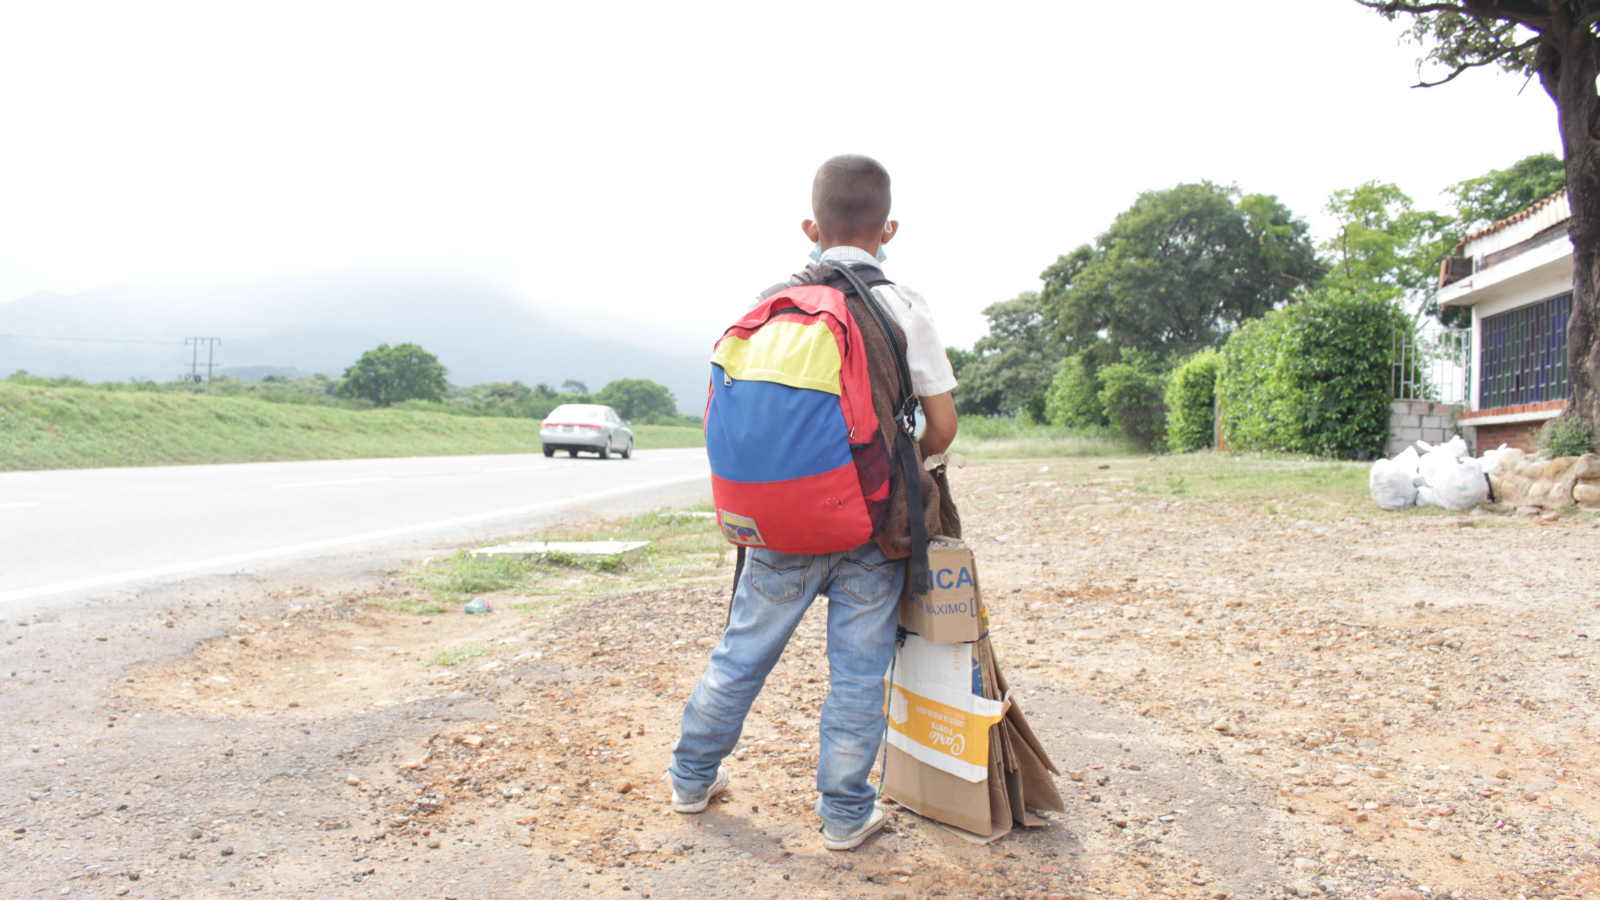 Latinoamérica vive una de las crisis de migración infantil más complejas del mundo, advirtió la Unicef